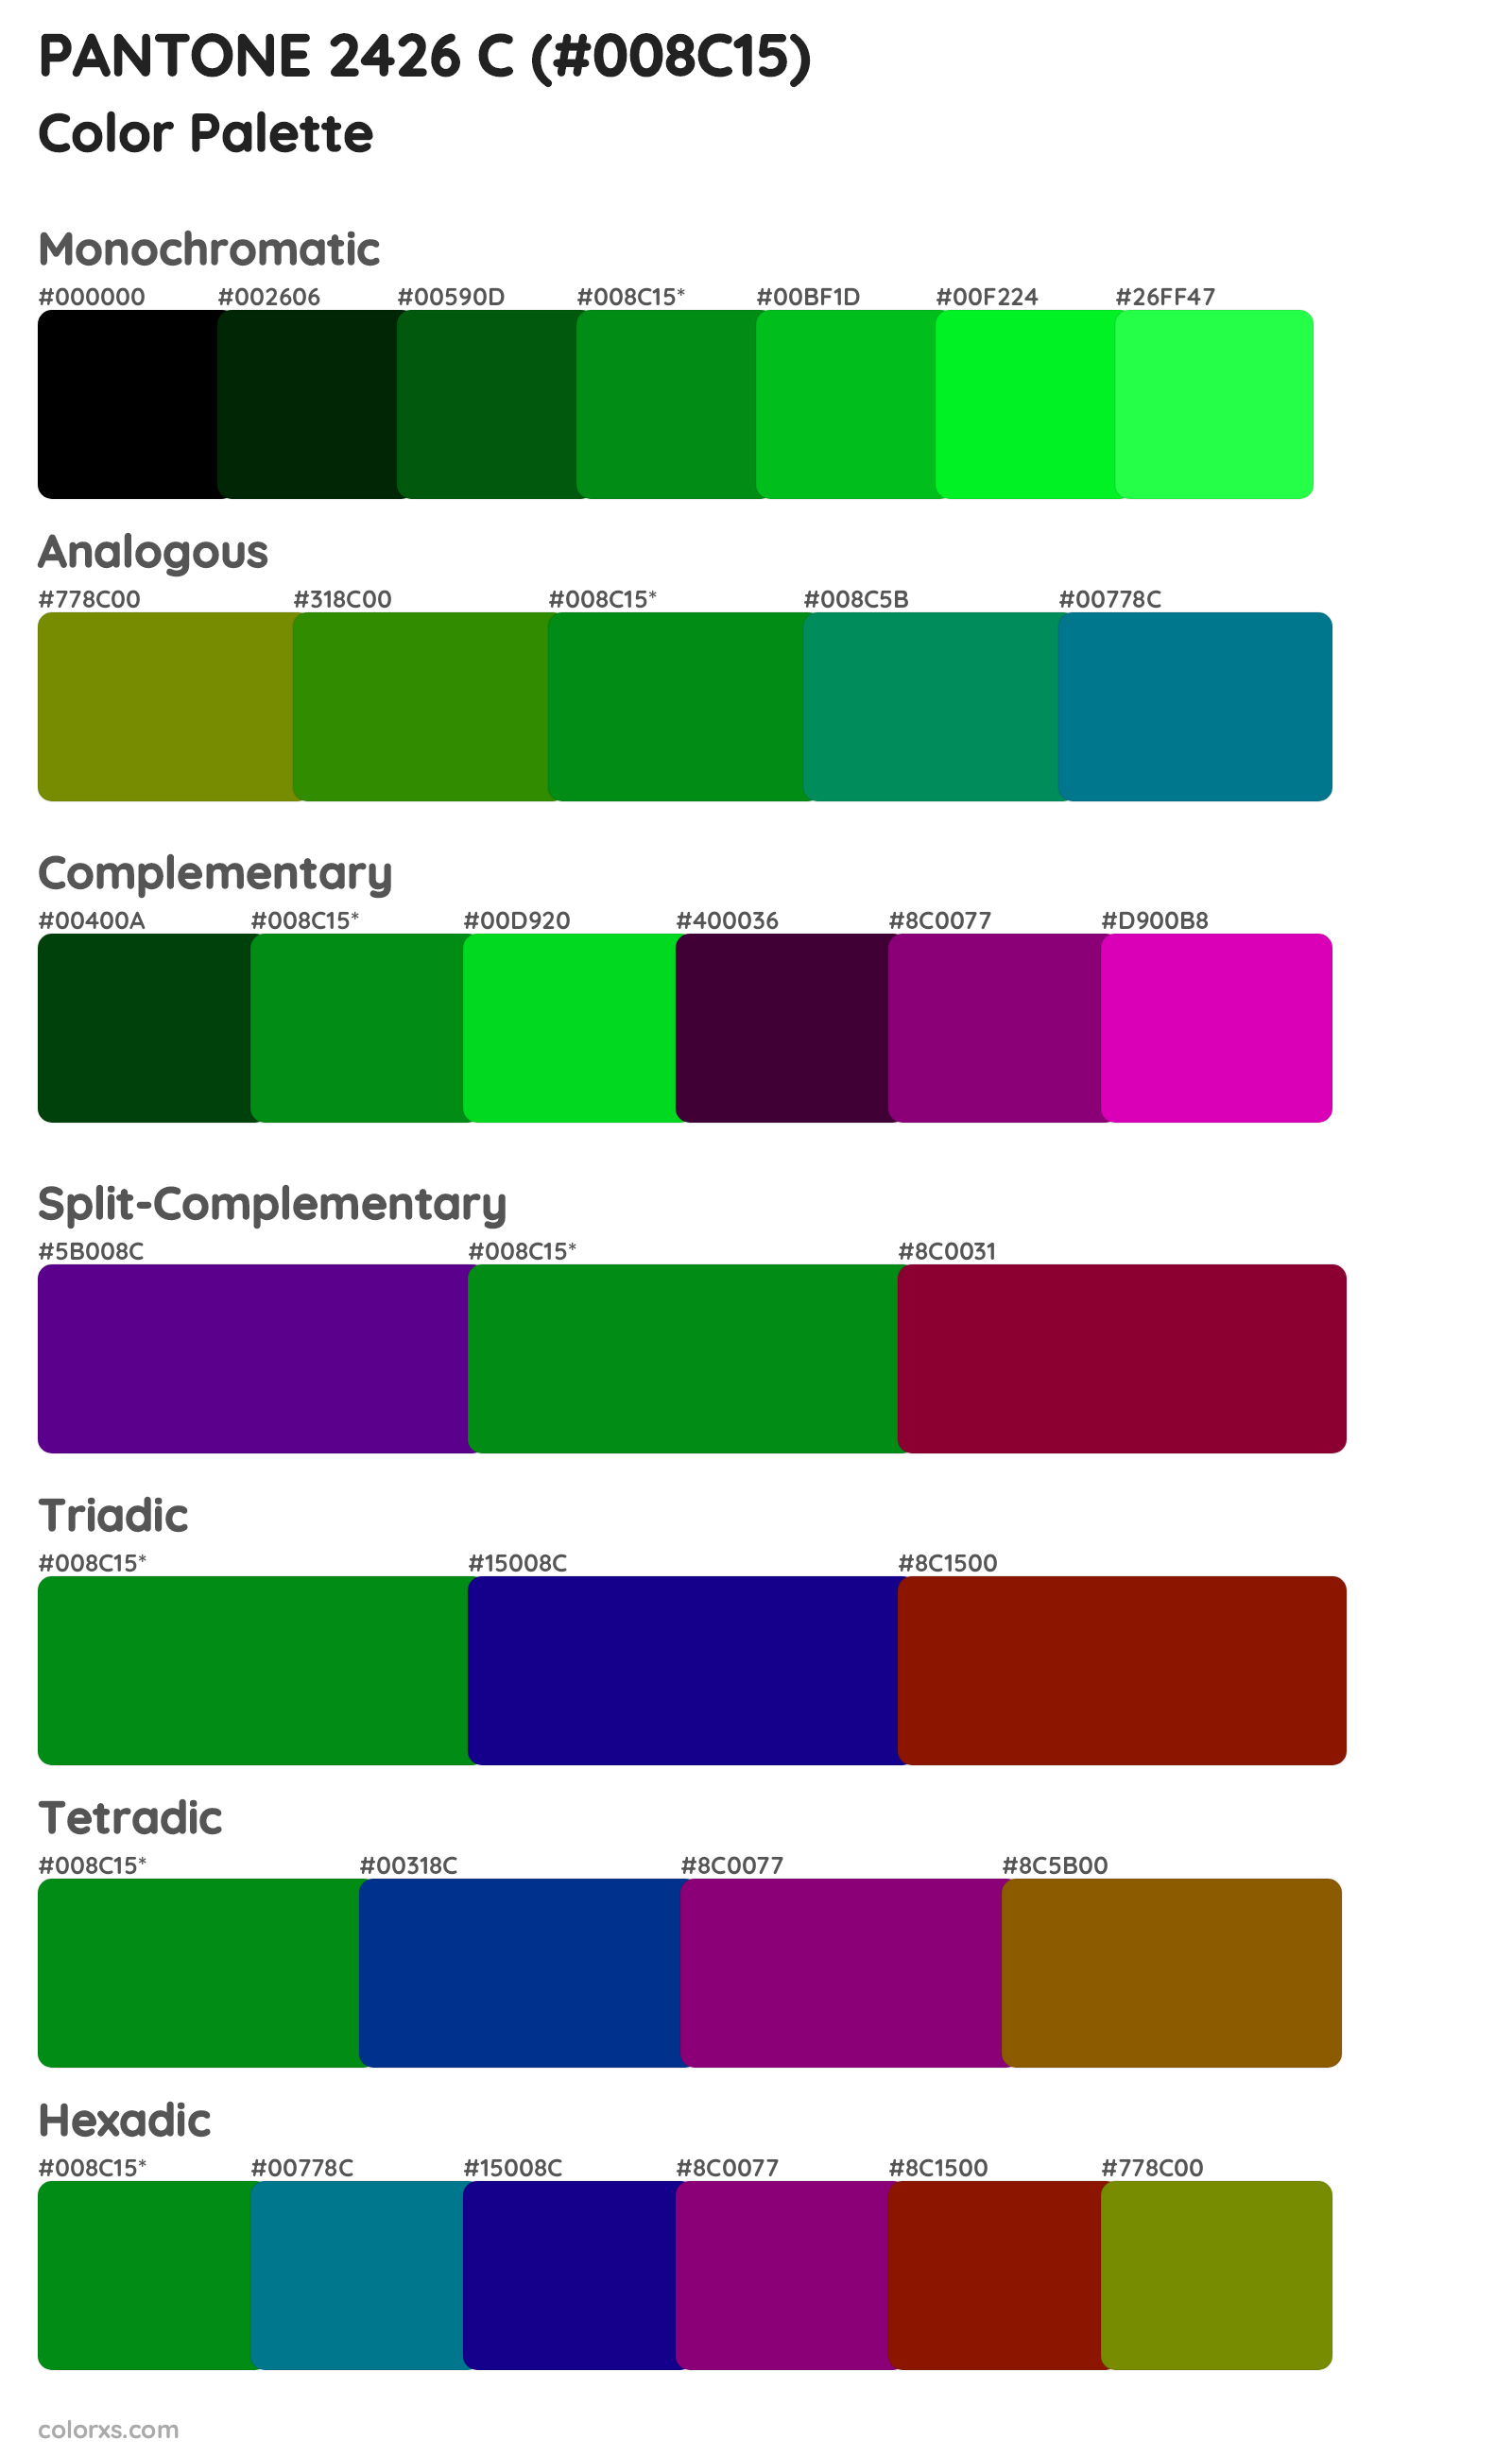 PANTONE 2426 C Color Scheme Palettes